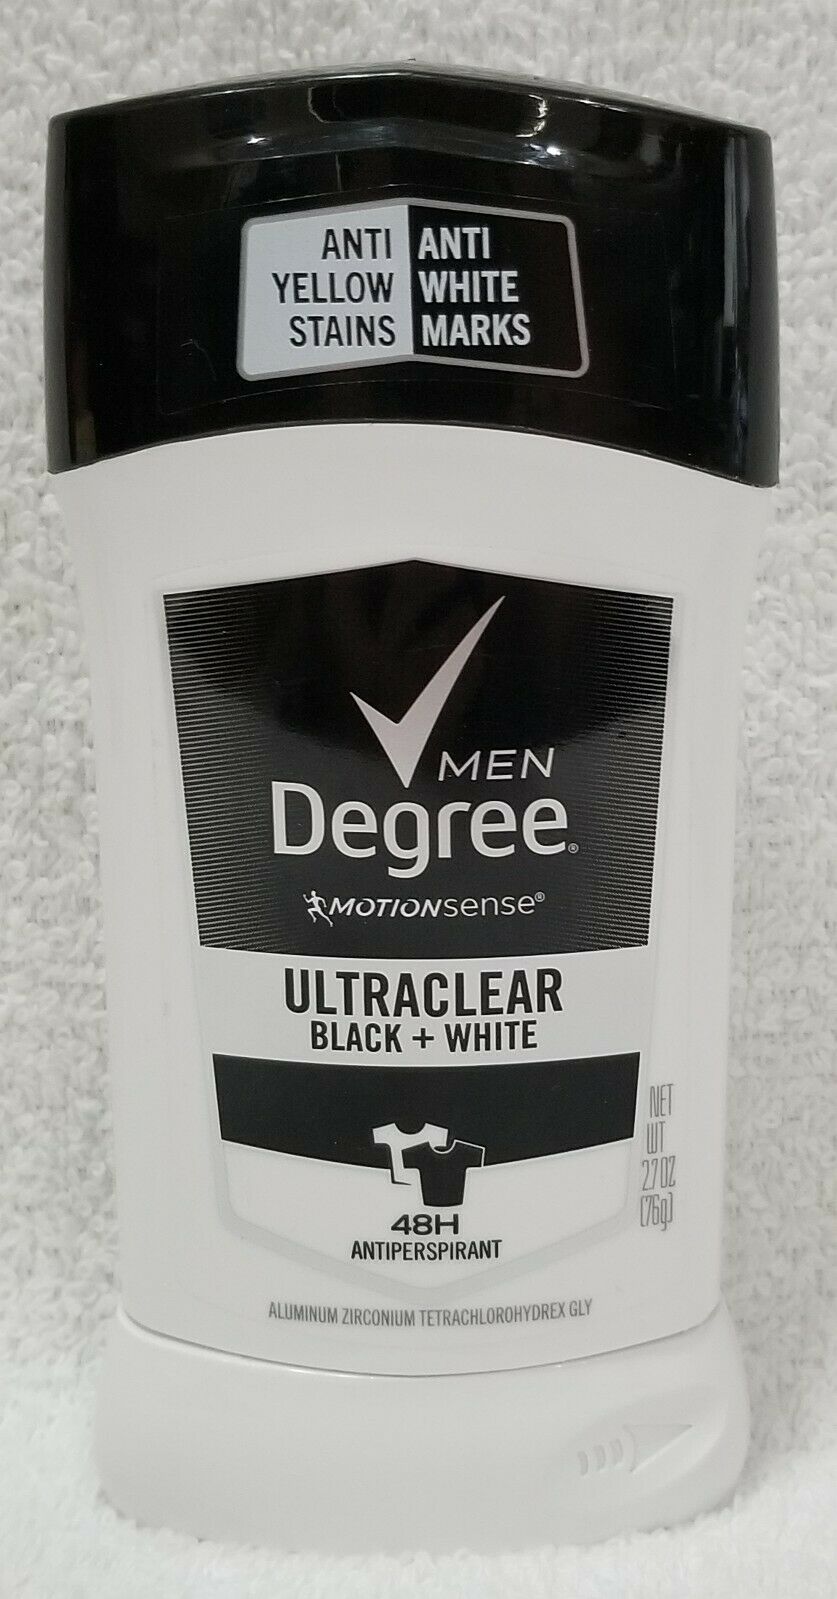 Degree Ultraclear Anti Black White Stains ANTIPERSPIRANT 48H Men 2.7 oz/76g New - £9.71 GBP